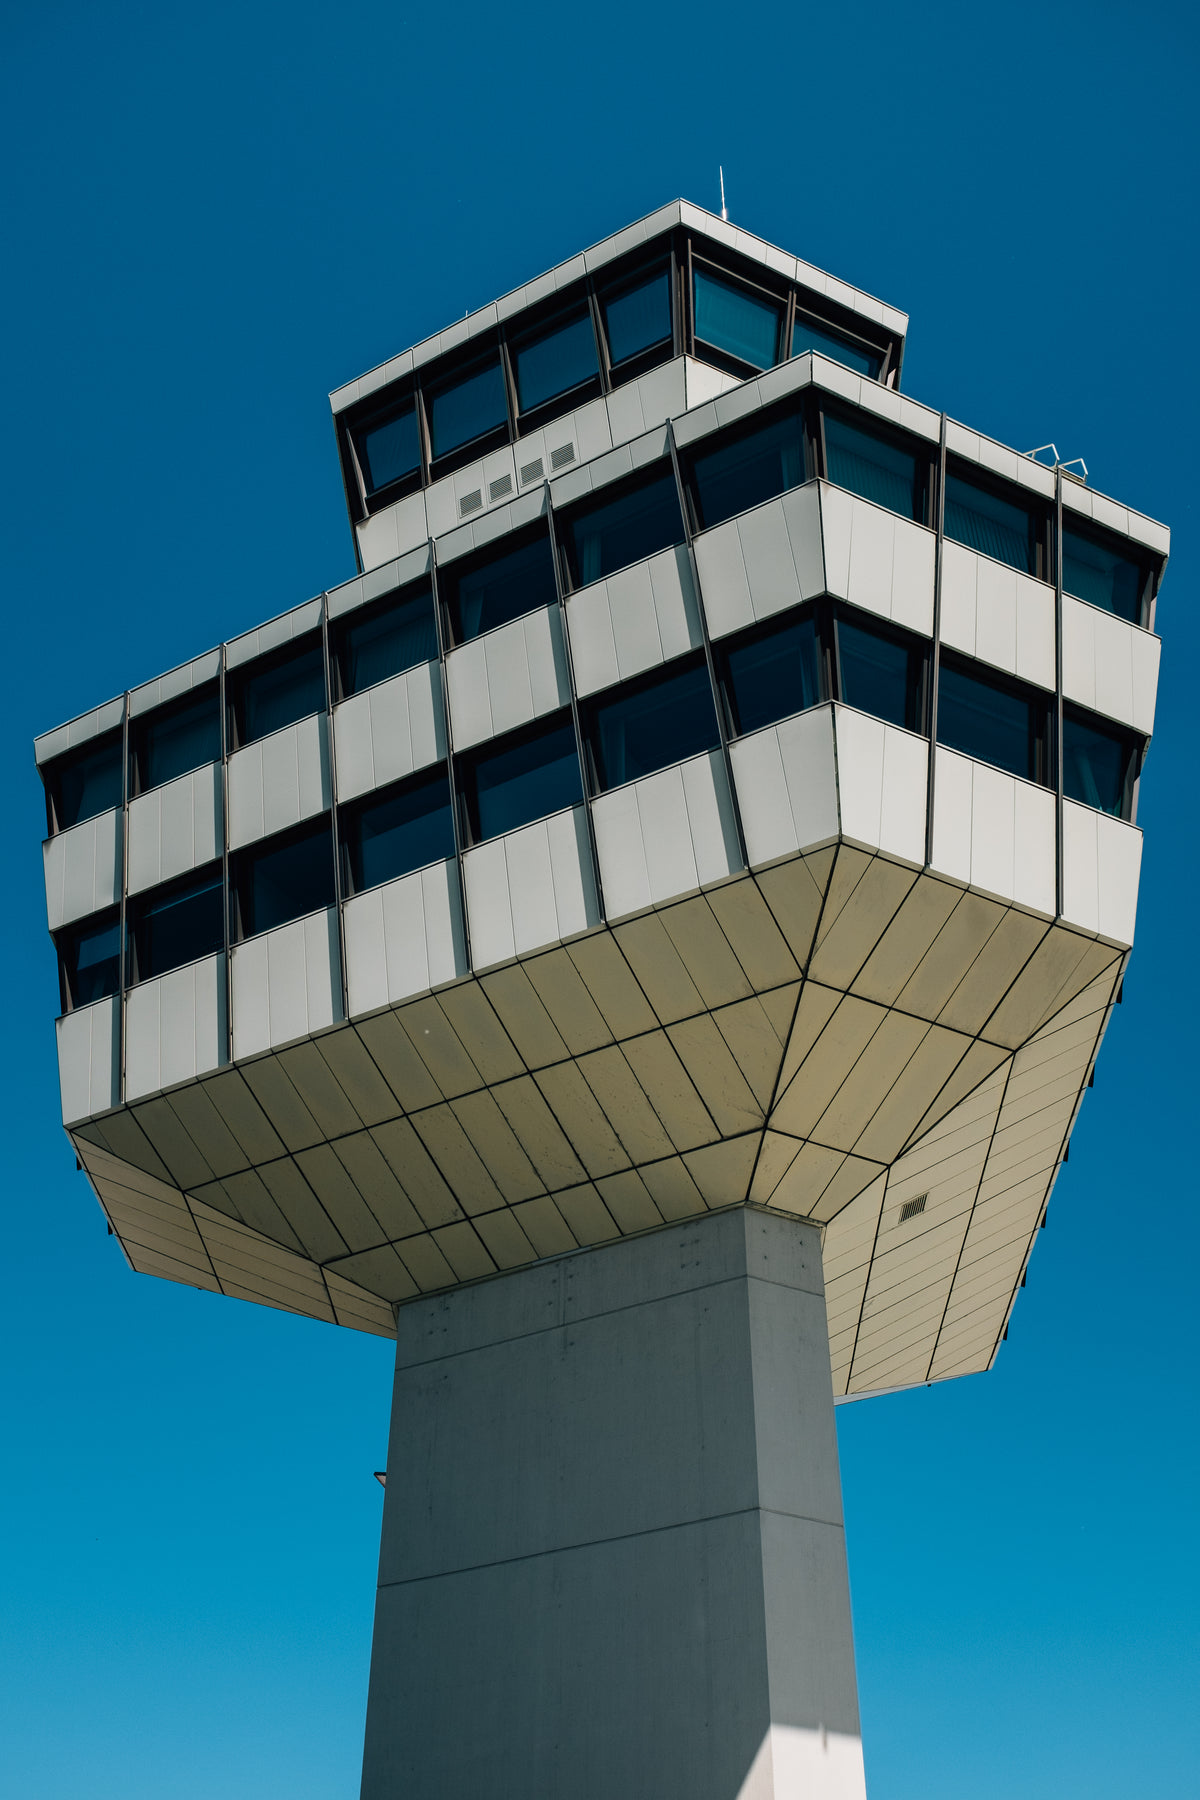 airport tower under deep blue skies